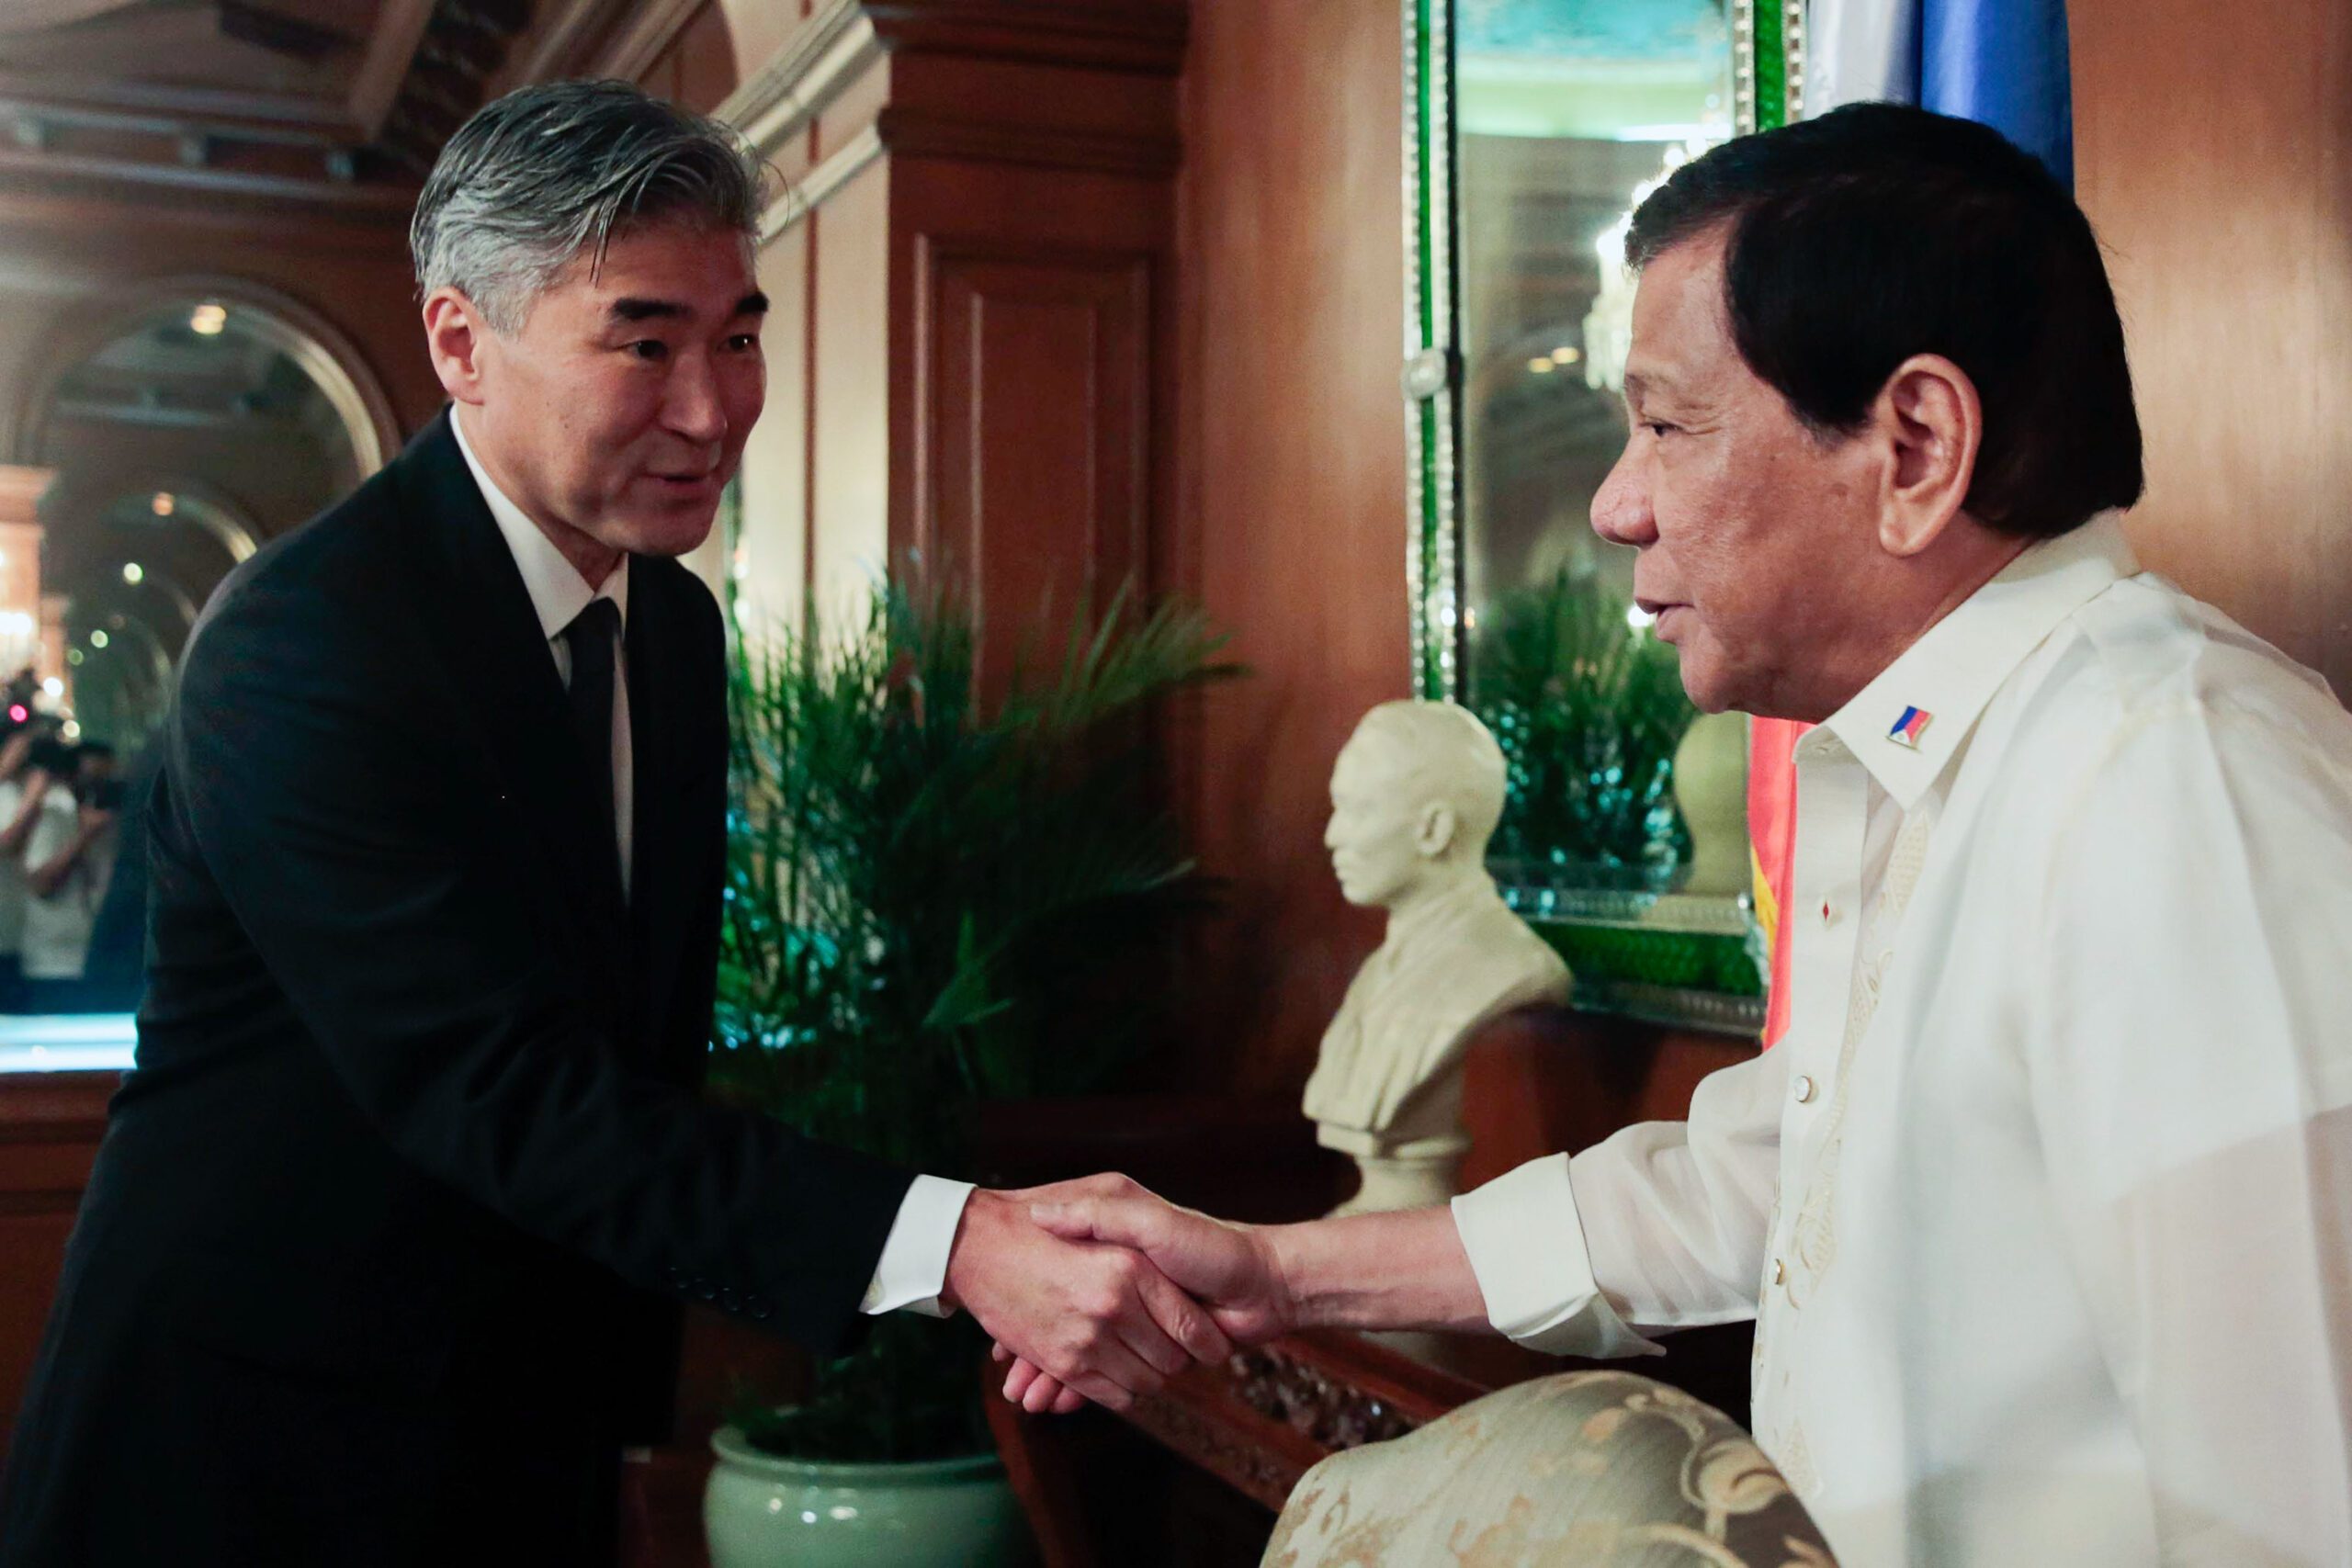 Duterte defends drug war in meeting with U.S. ambassador